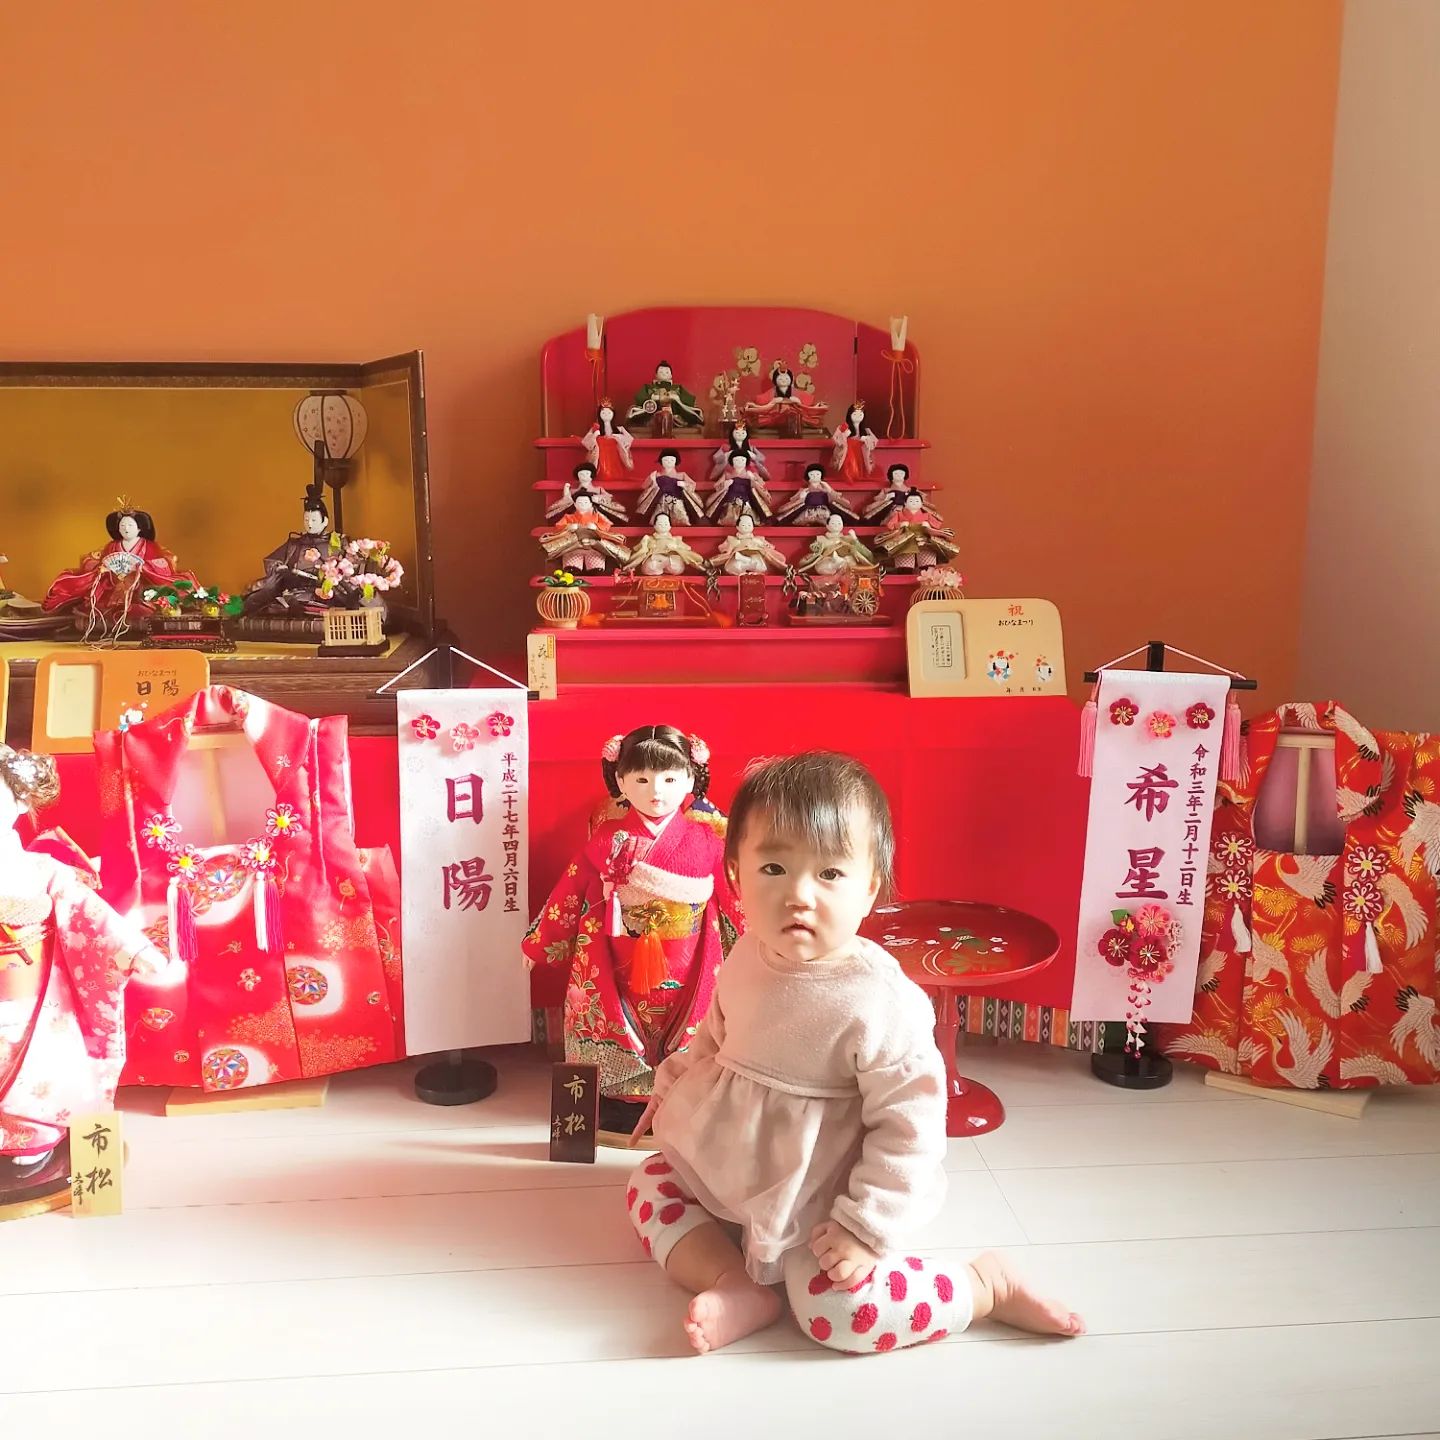 岡崎市のお客様宅に15人全て揃った雛飾りを三女様へ配送し飾らせていただきました。- from Instagram